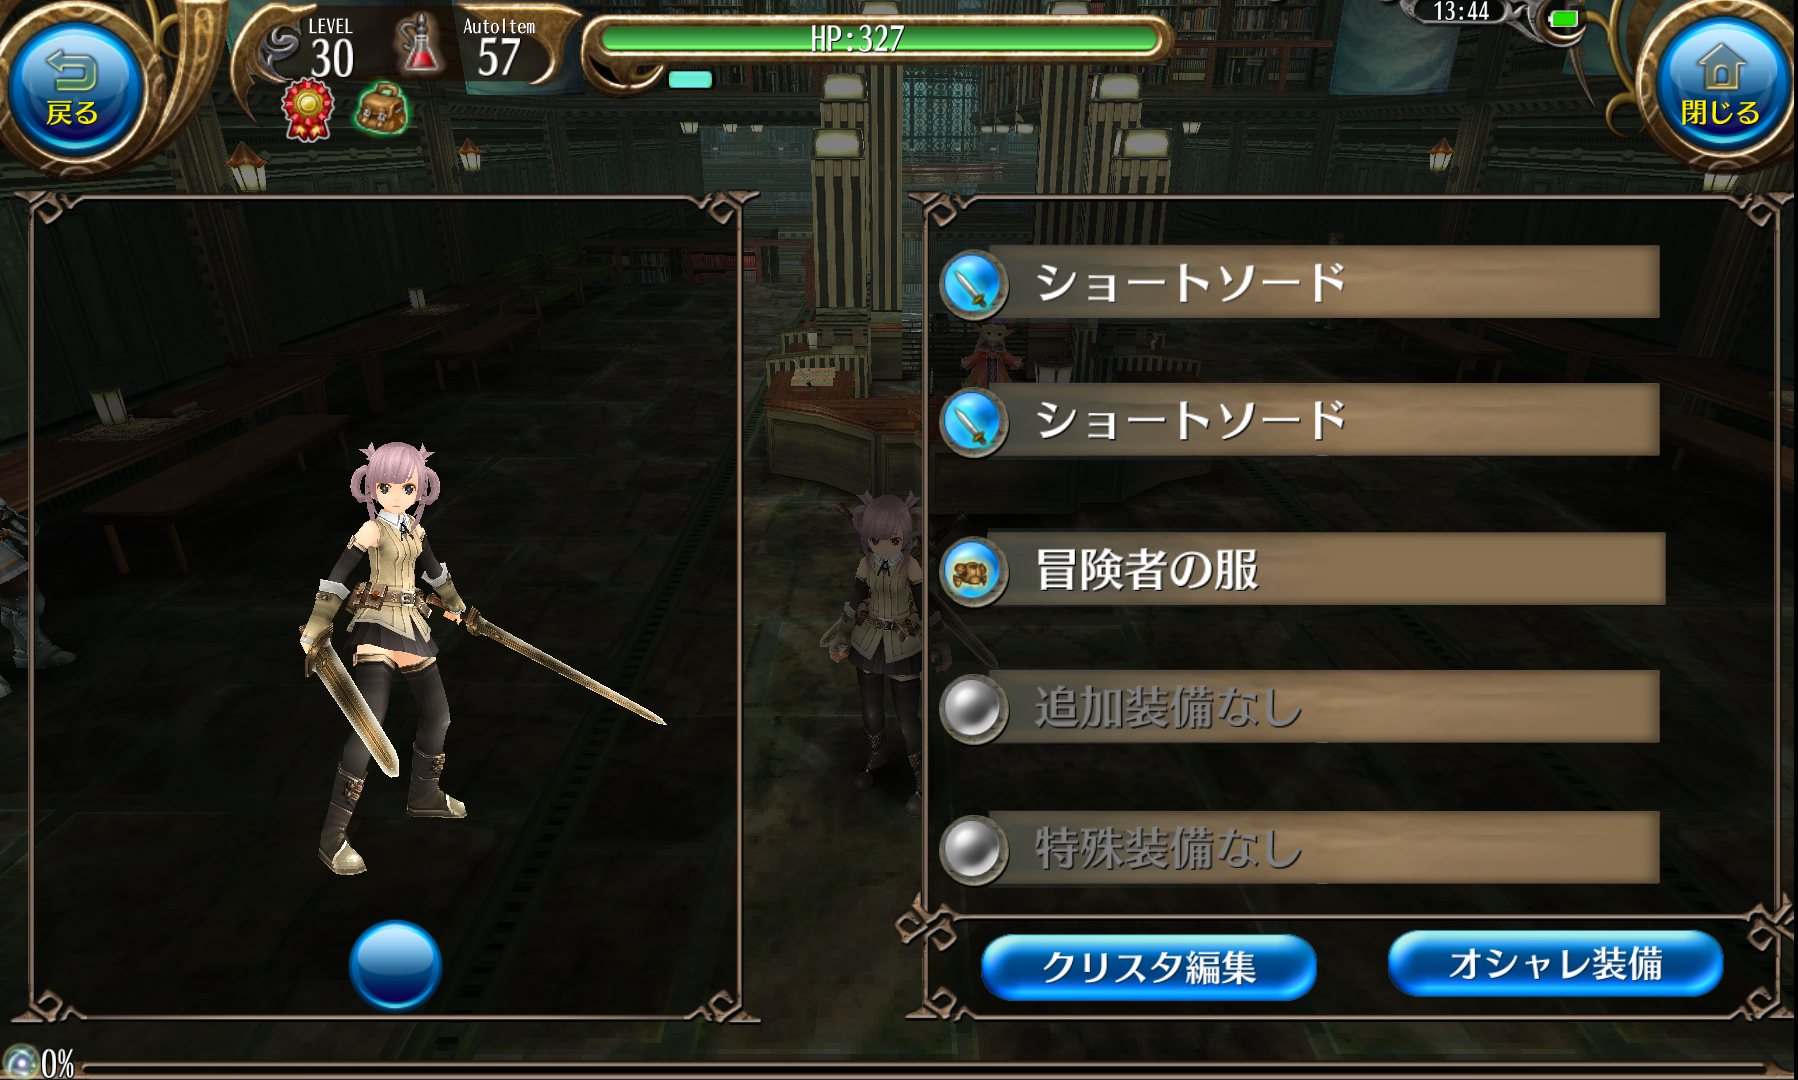 アソビモ トーラムオンライン で新たな戦闘スタイル 双剣 を追加 2本の剣で大ダメージを与えられる Social Game Info